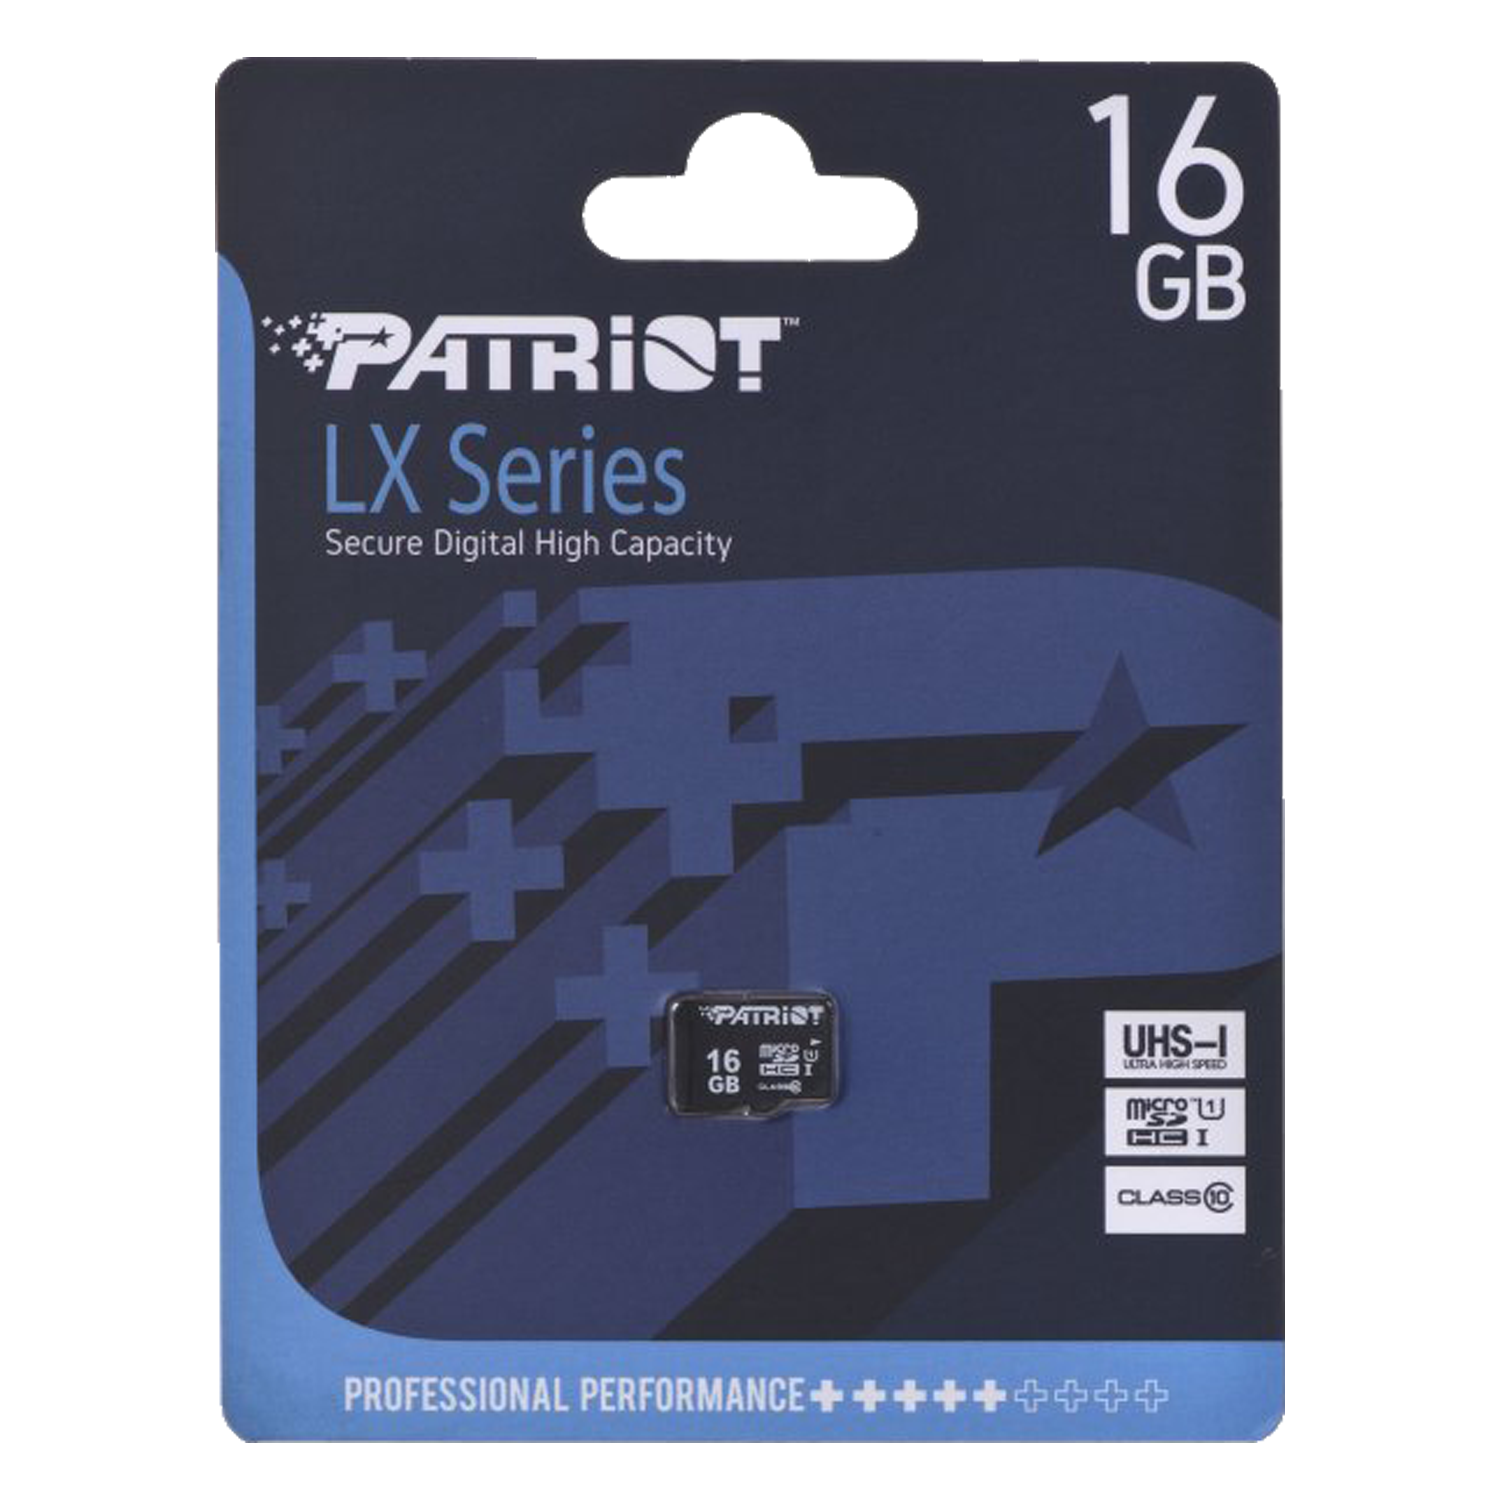 Cartão de Memória Micro SD Patriot LX Series 16GB / C10 / U1 / SDHC - (PSF16GMDC10)
